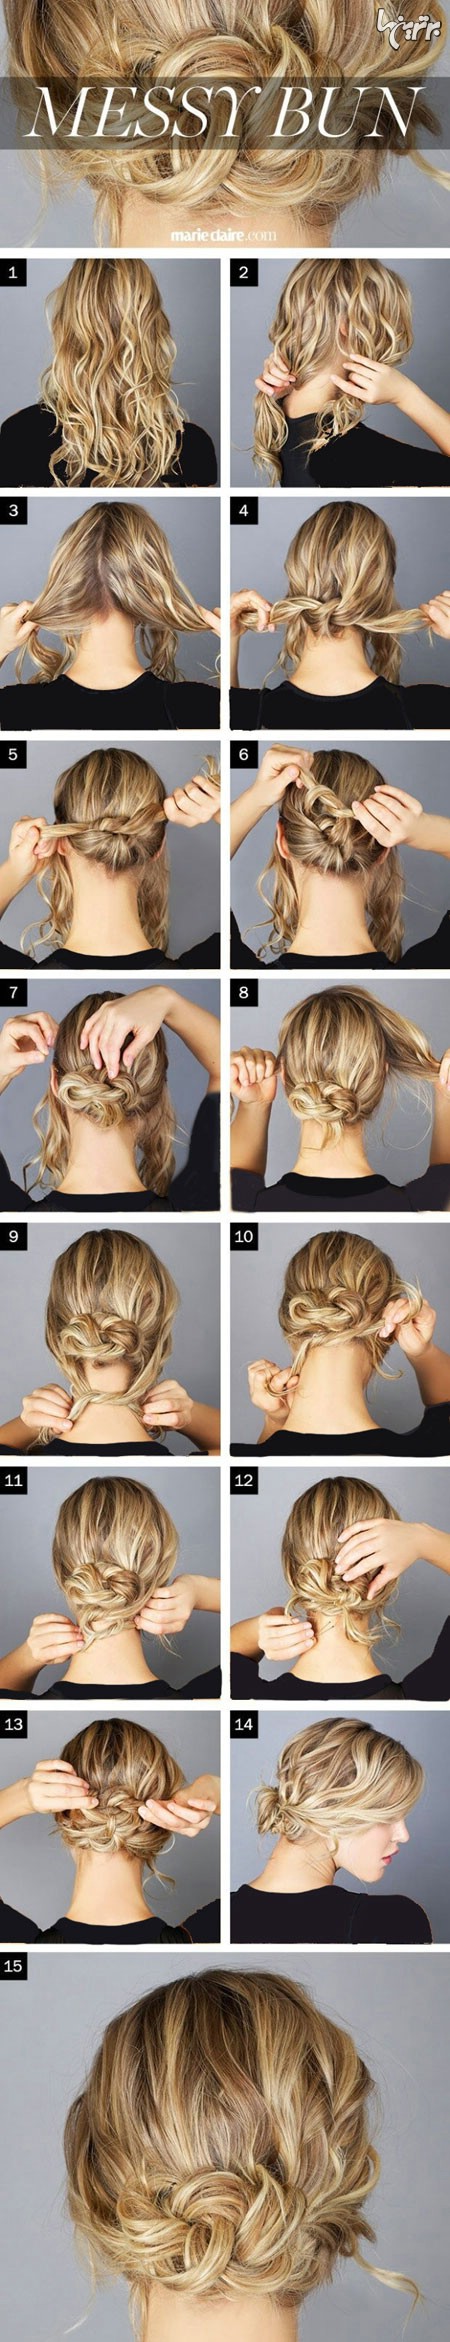 آموزش مدل های بستن مو برای خانم های تنبل (2)